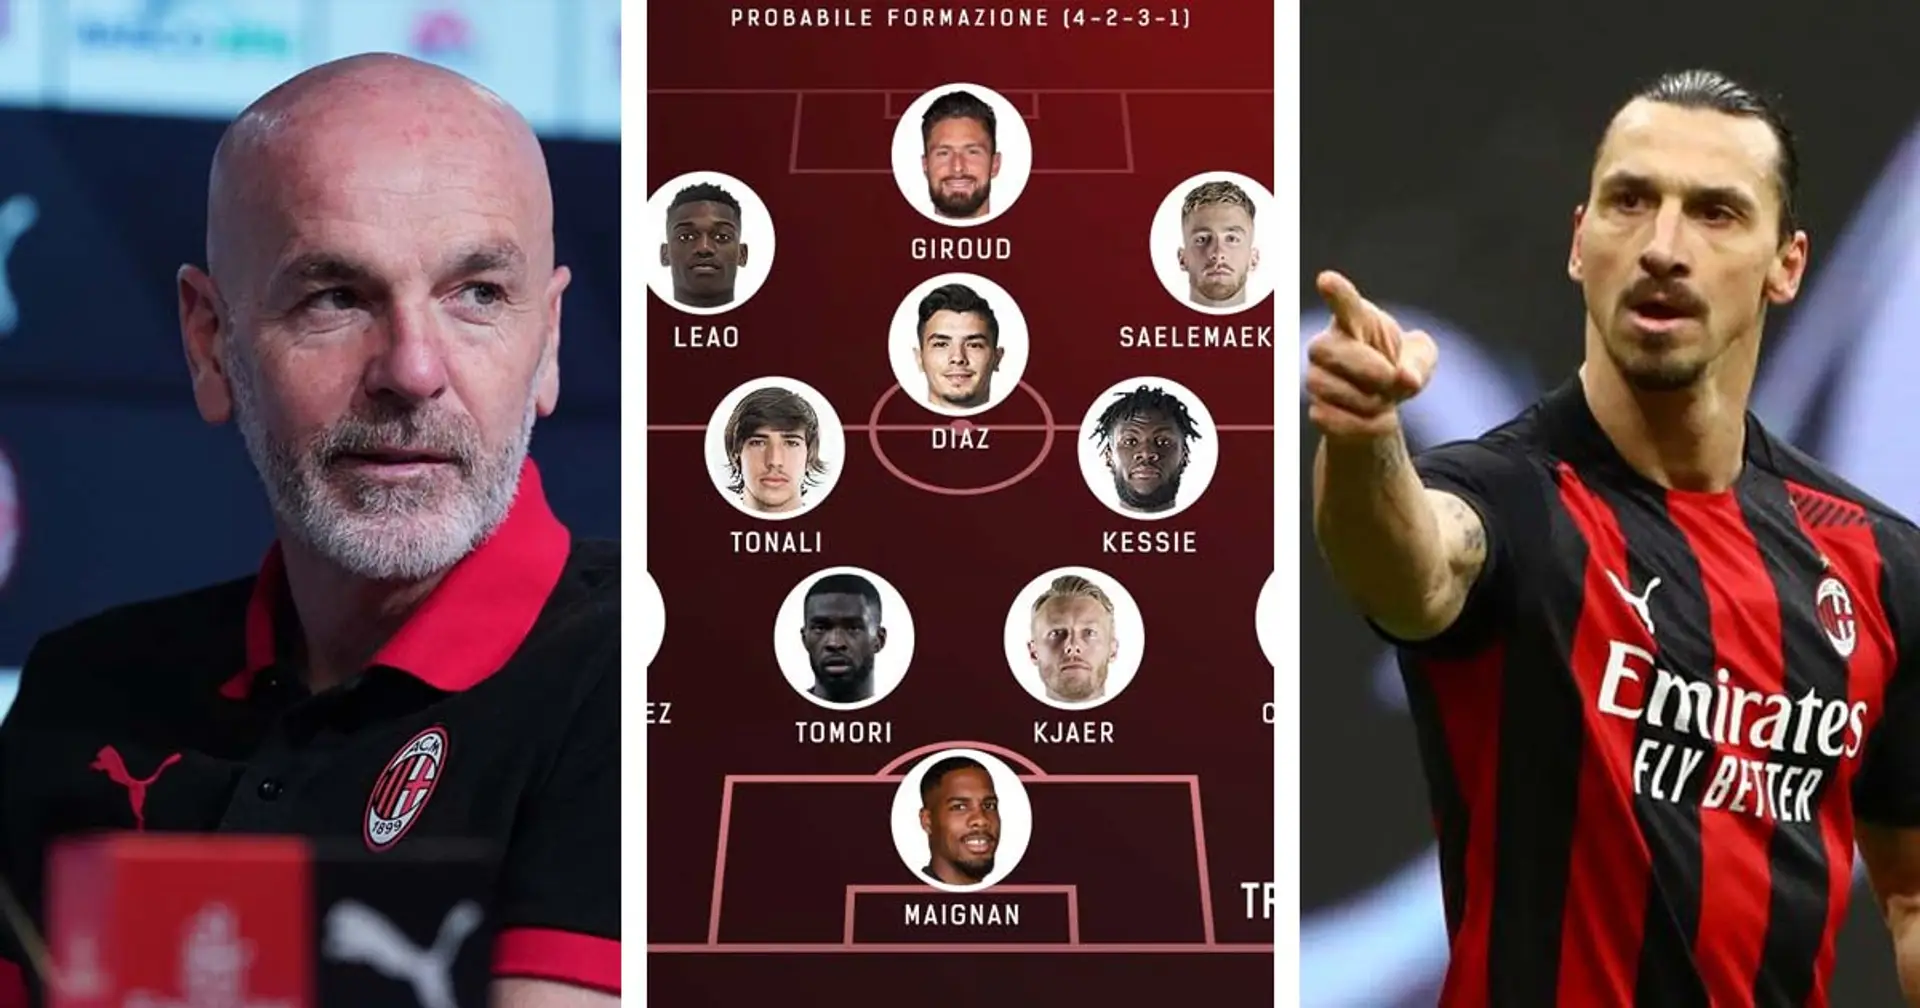 Le probabili formazioni di Liverpool-Milan e altre 3 storie sui Rossoneri che potresti esserti perso